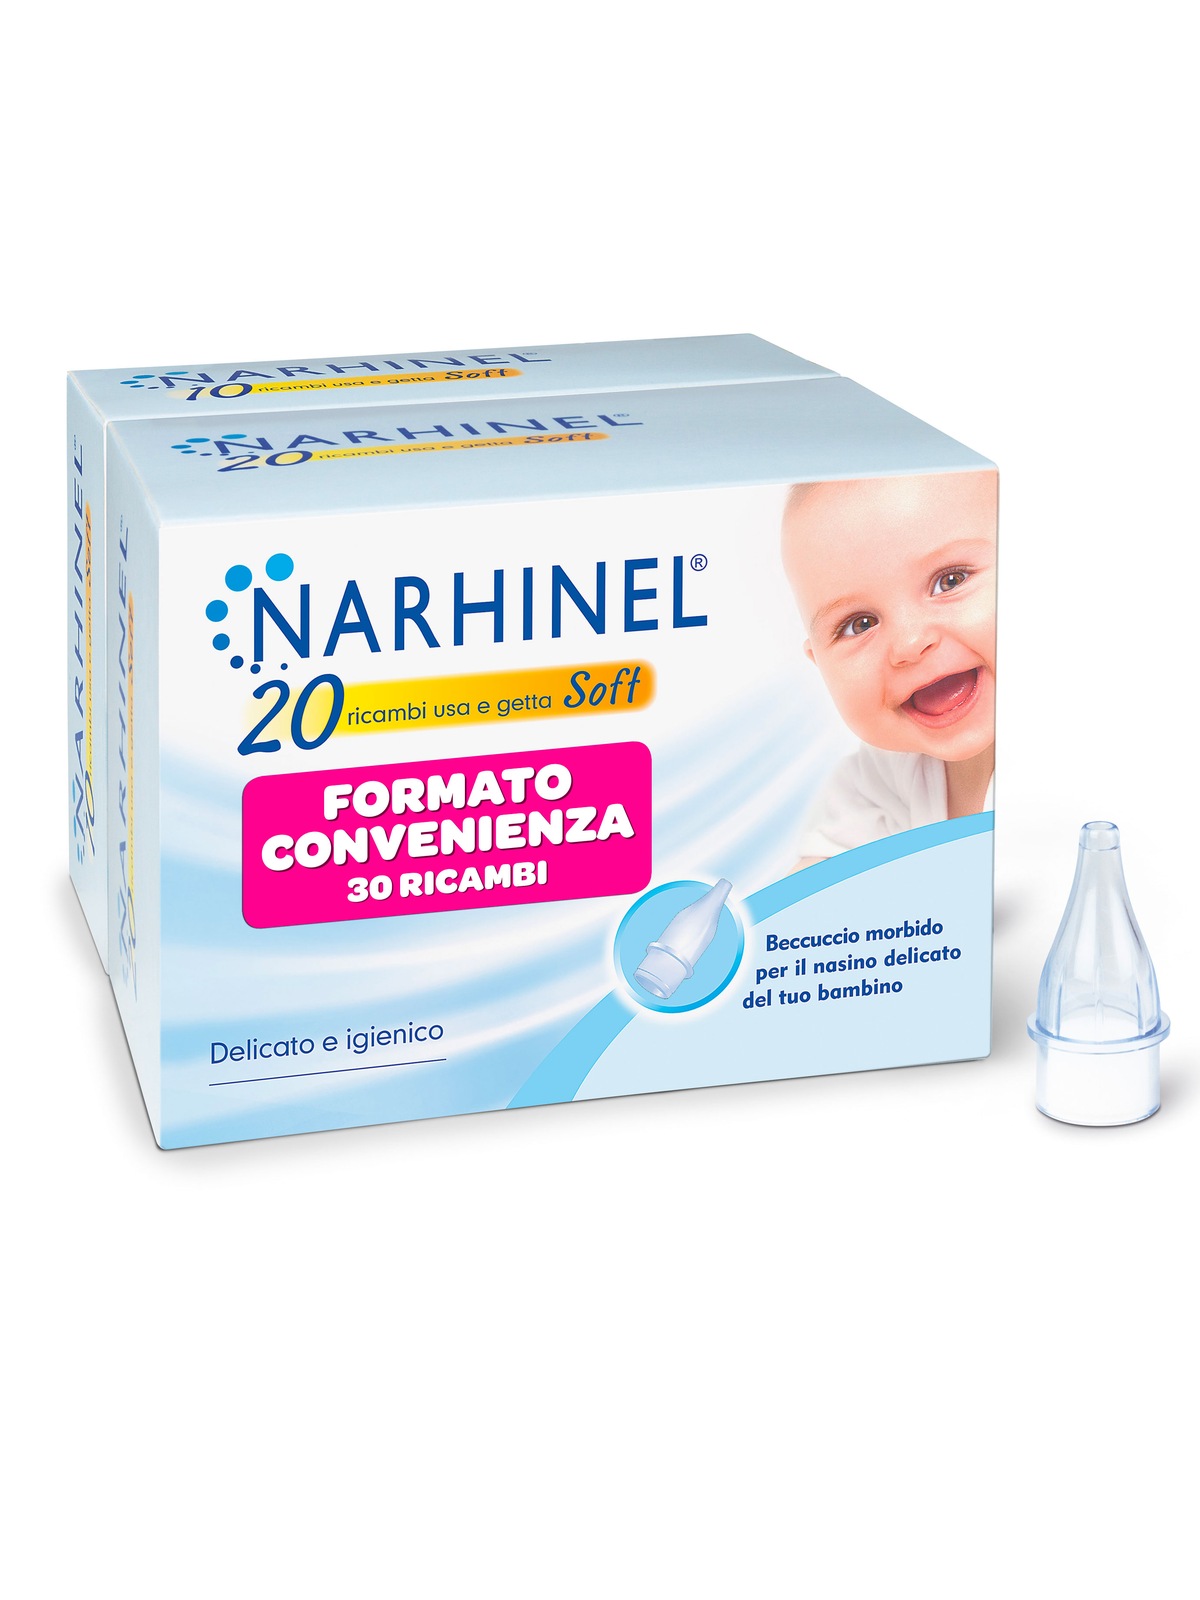 Narhinel ricambi per aspiratore nasale per neonati e bambini con filtro assorbente per trattenere il muco, usa e getta, soft 20+10 - NARHINEL